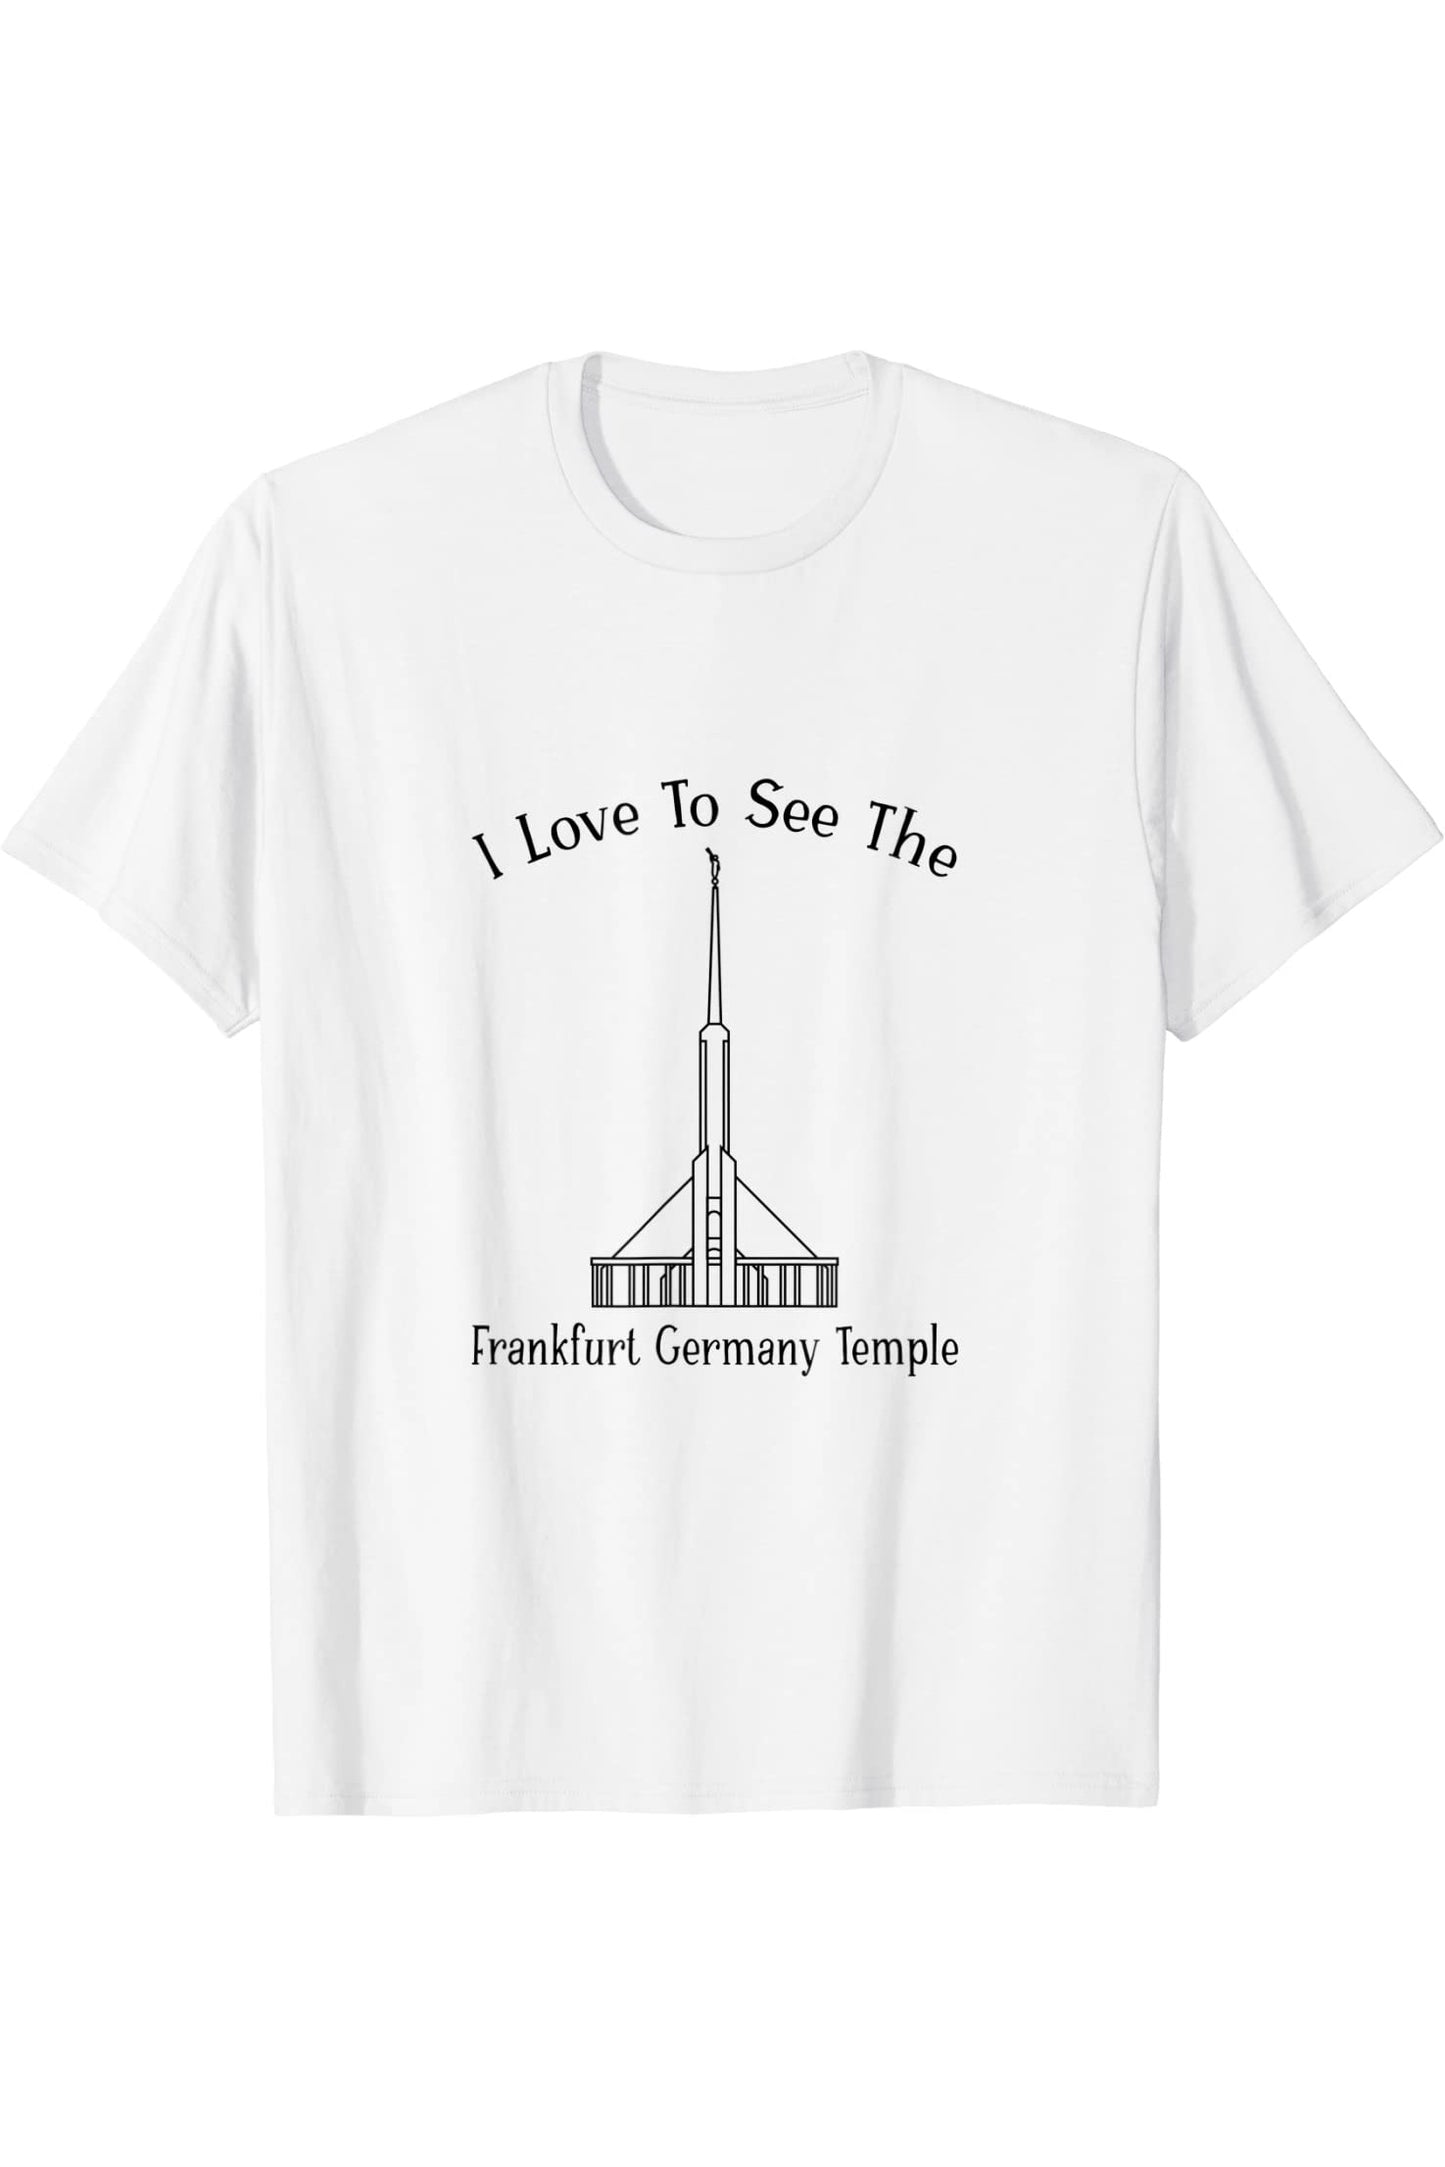 Francoforte Germania Tempio, amo vedere il mio tempio, felice T-Shirt